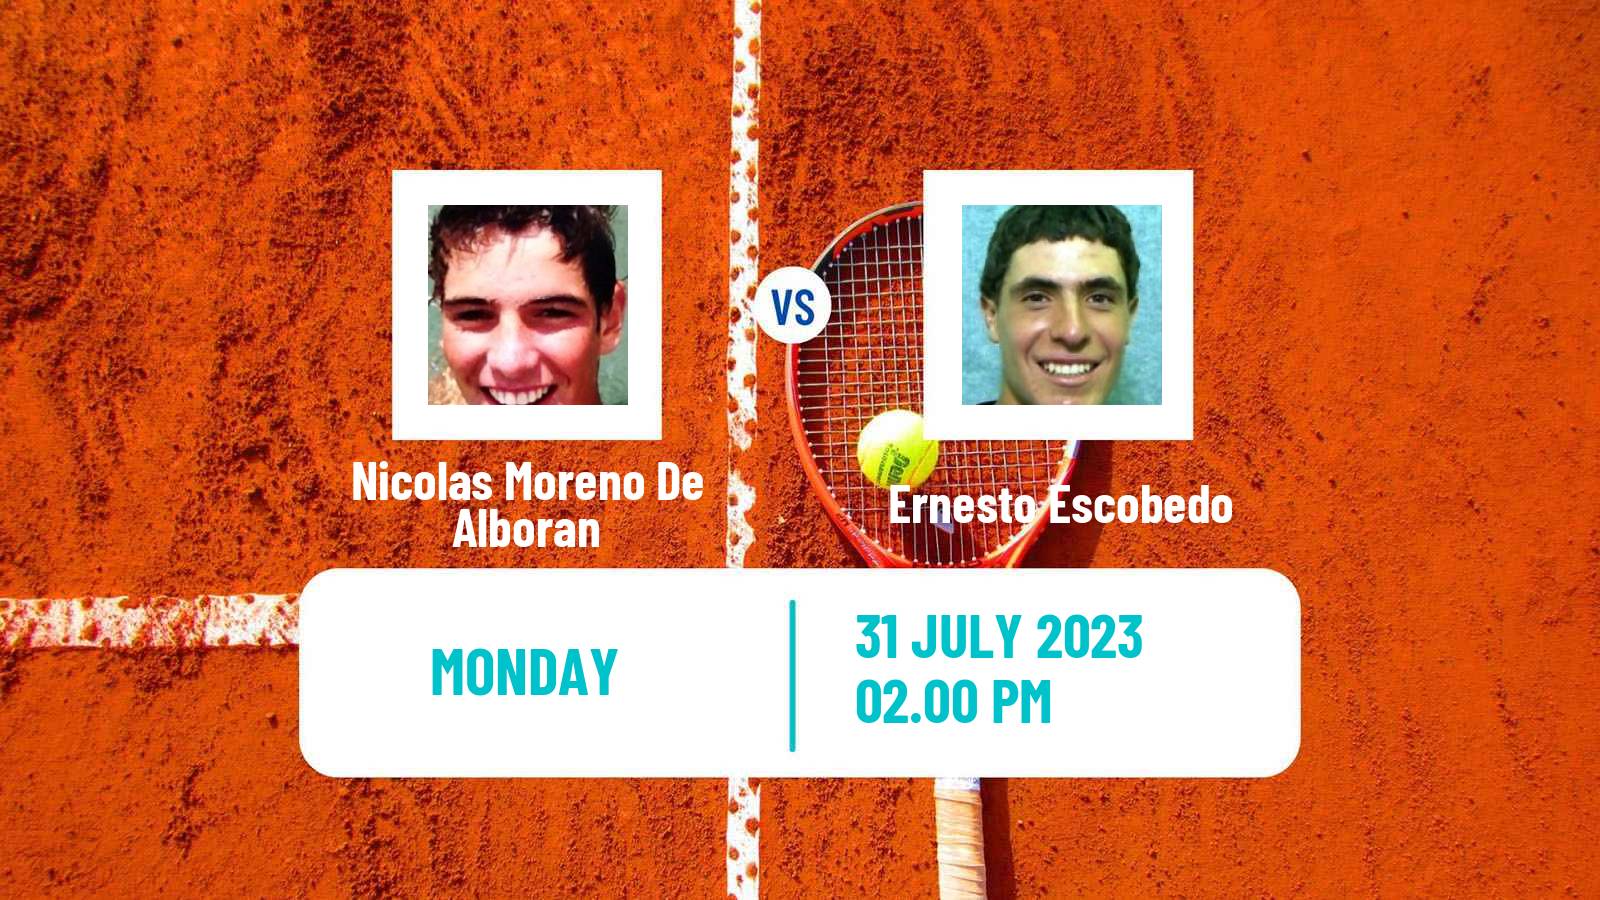 Tennis ATP Los Cabos Nicolas Moreno De Alboran - Ernesto Escobedo